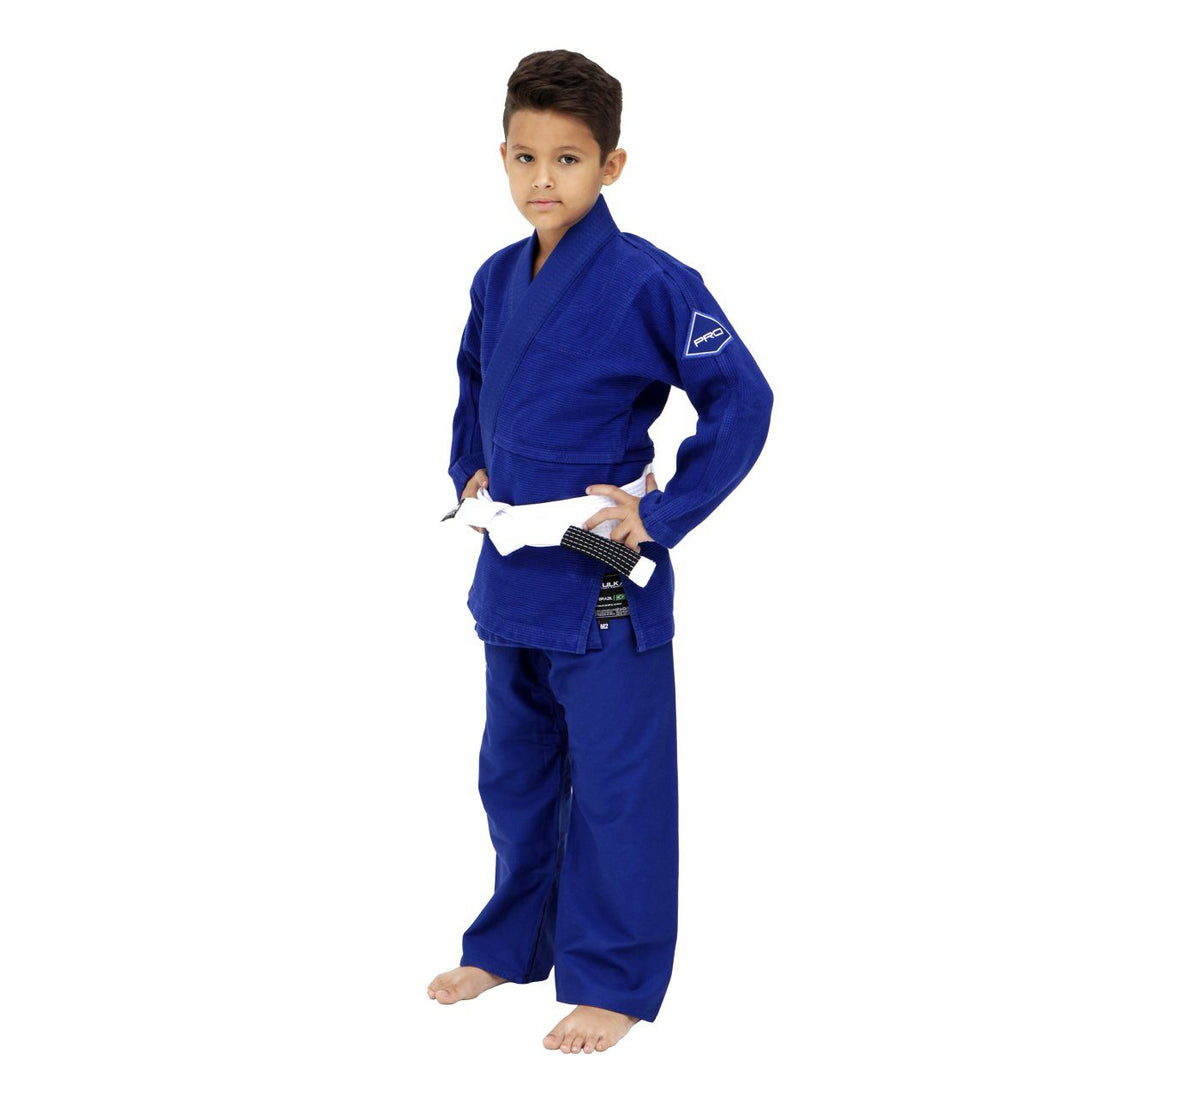 PRO EVOLUTION KIDS Jiu-Jitsu Gi (Blue)